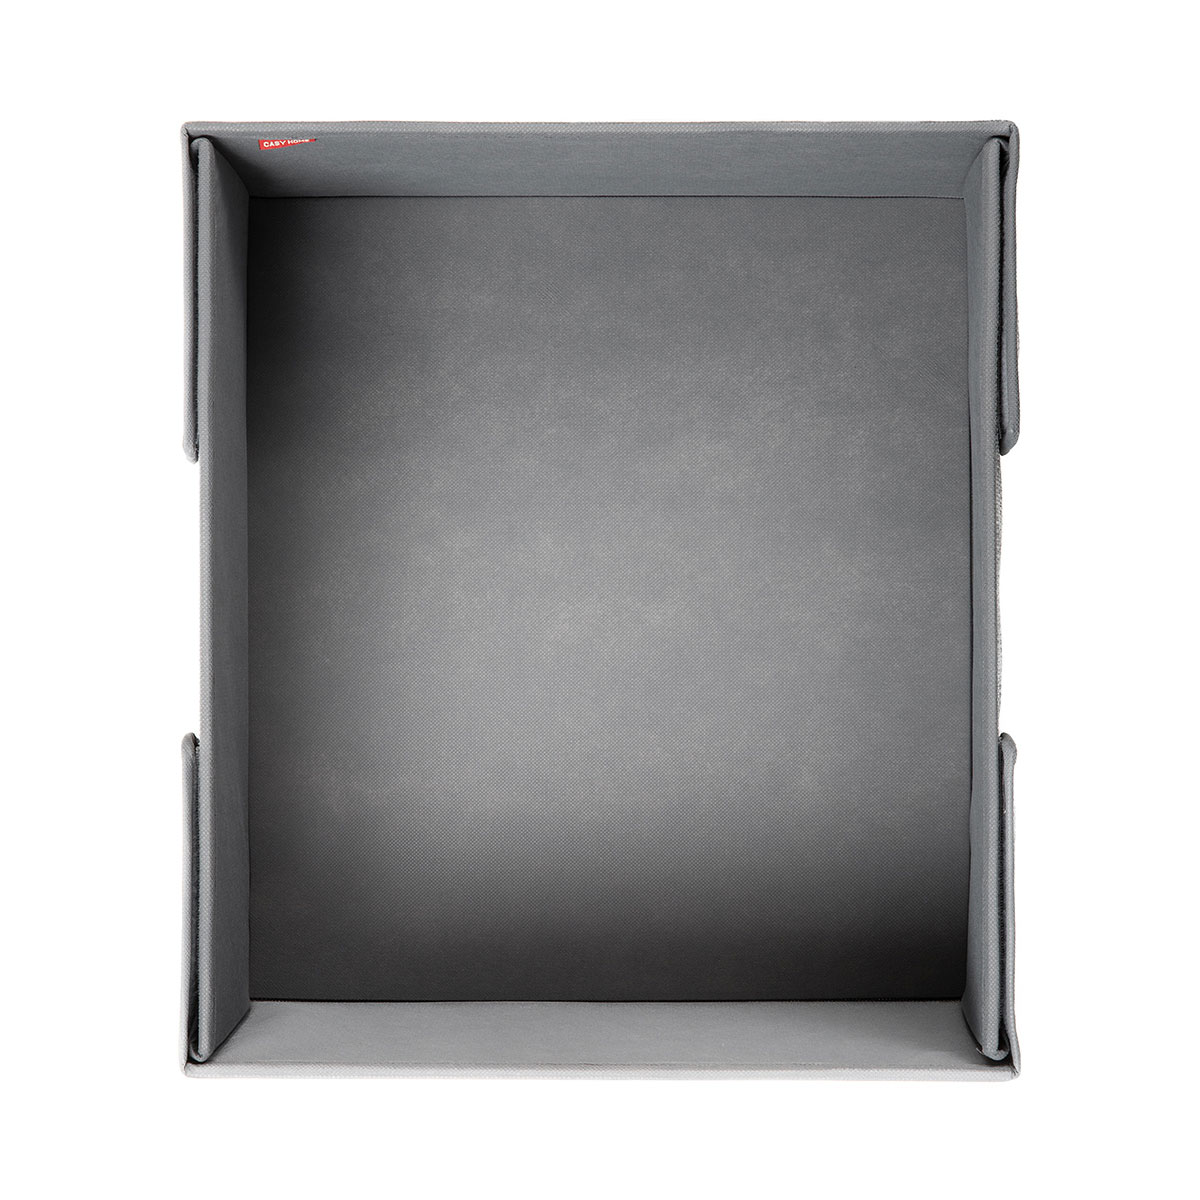 Короб с крышкой Casy Home For Professionals 50x44x22см, серебряный Casy Home PB-022, цвет серый - фото 4